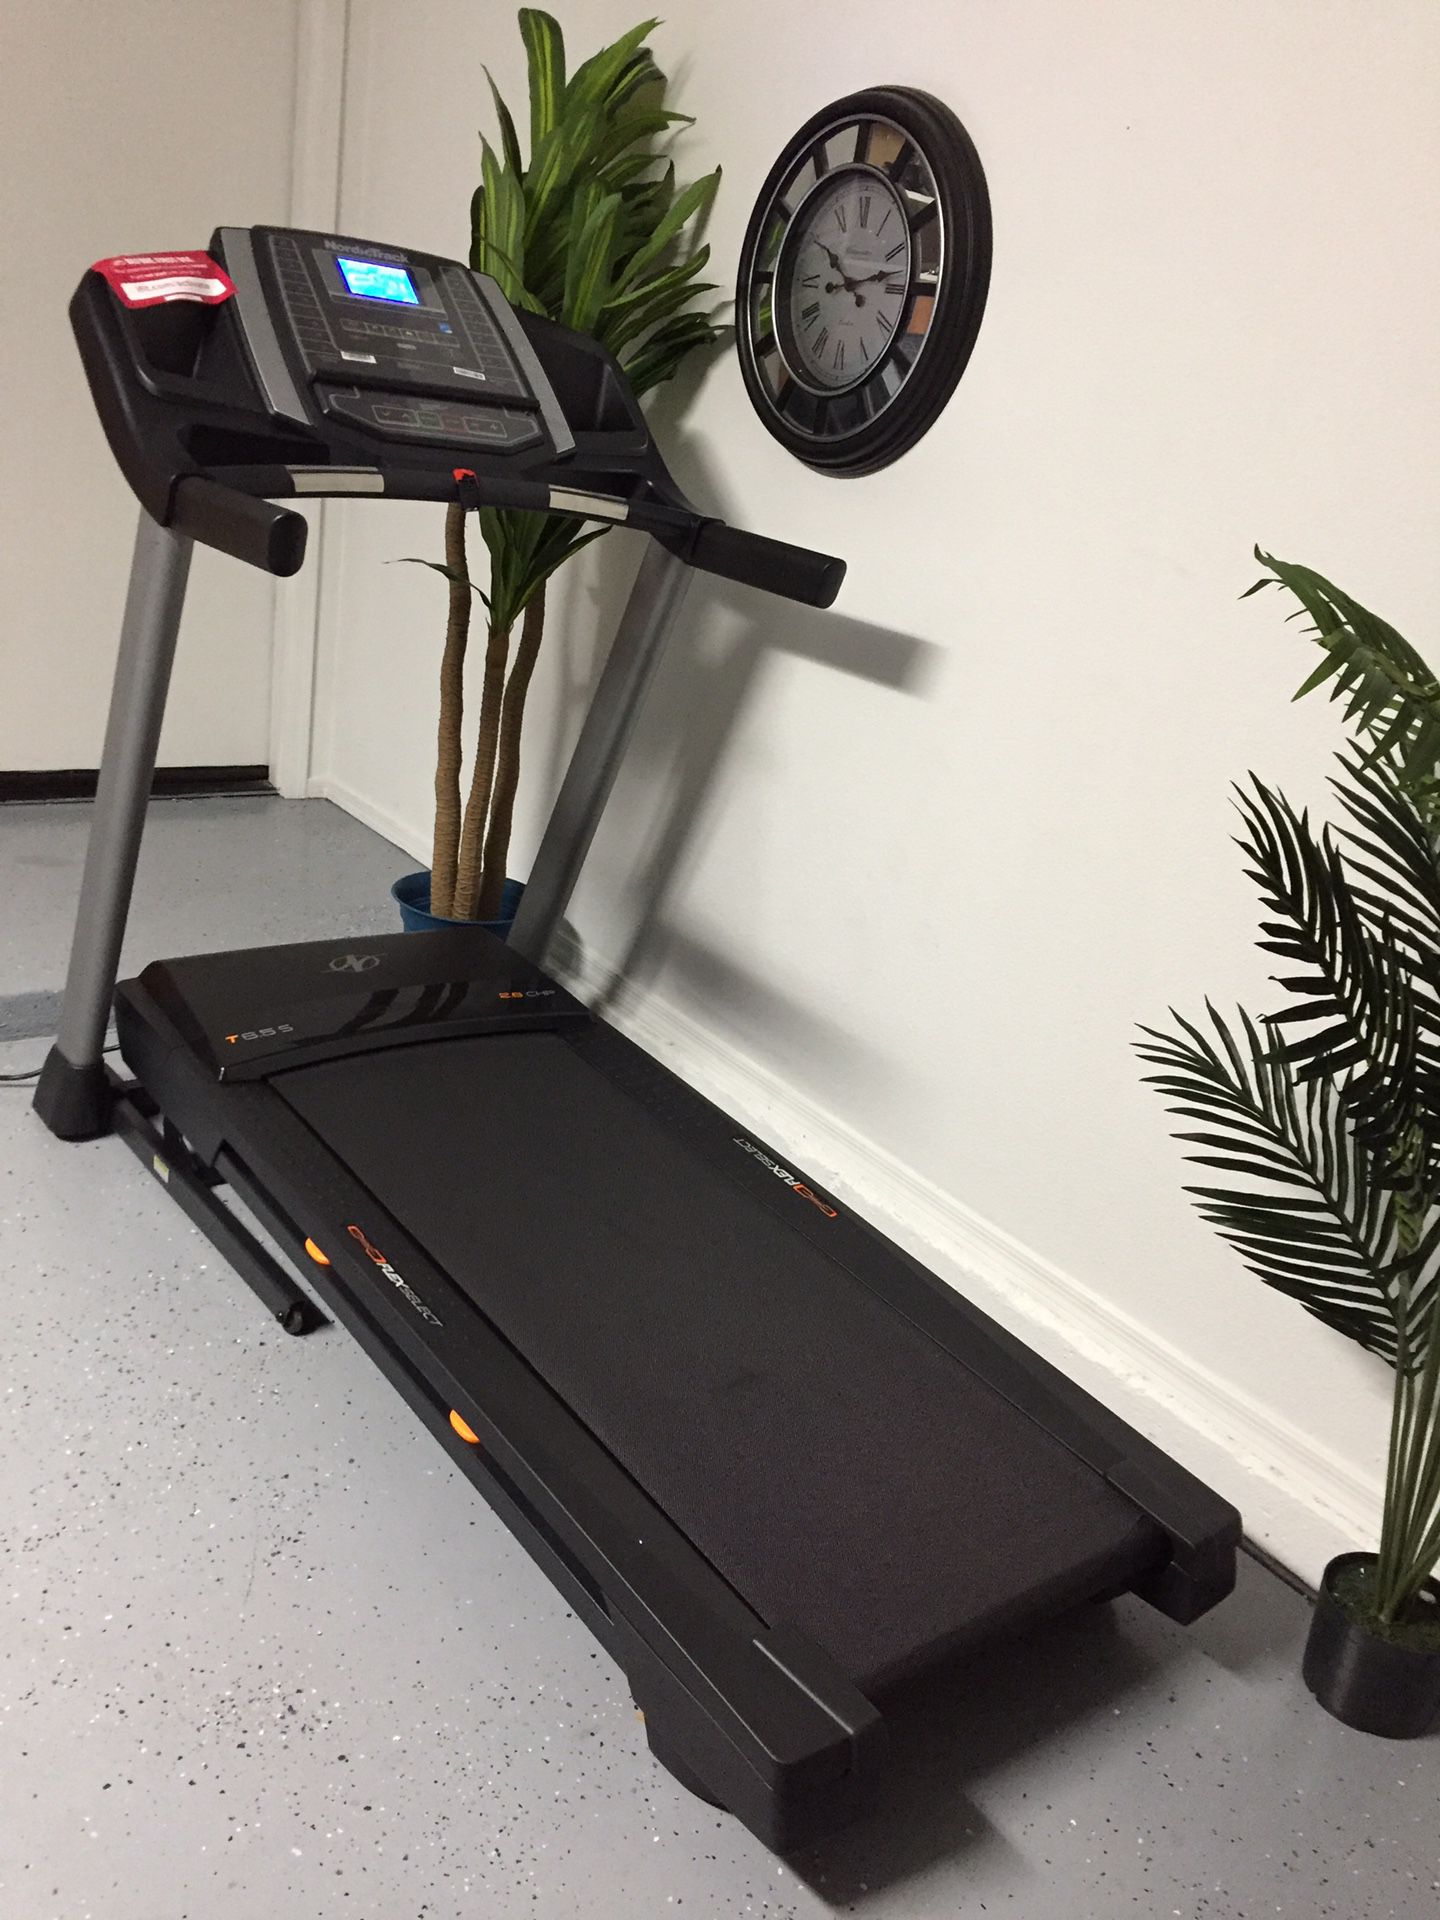 Nordic Track T6.5S Brand New Treadmill